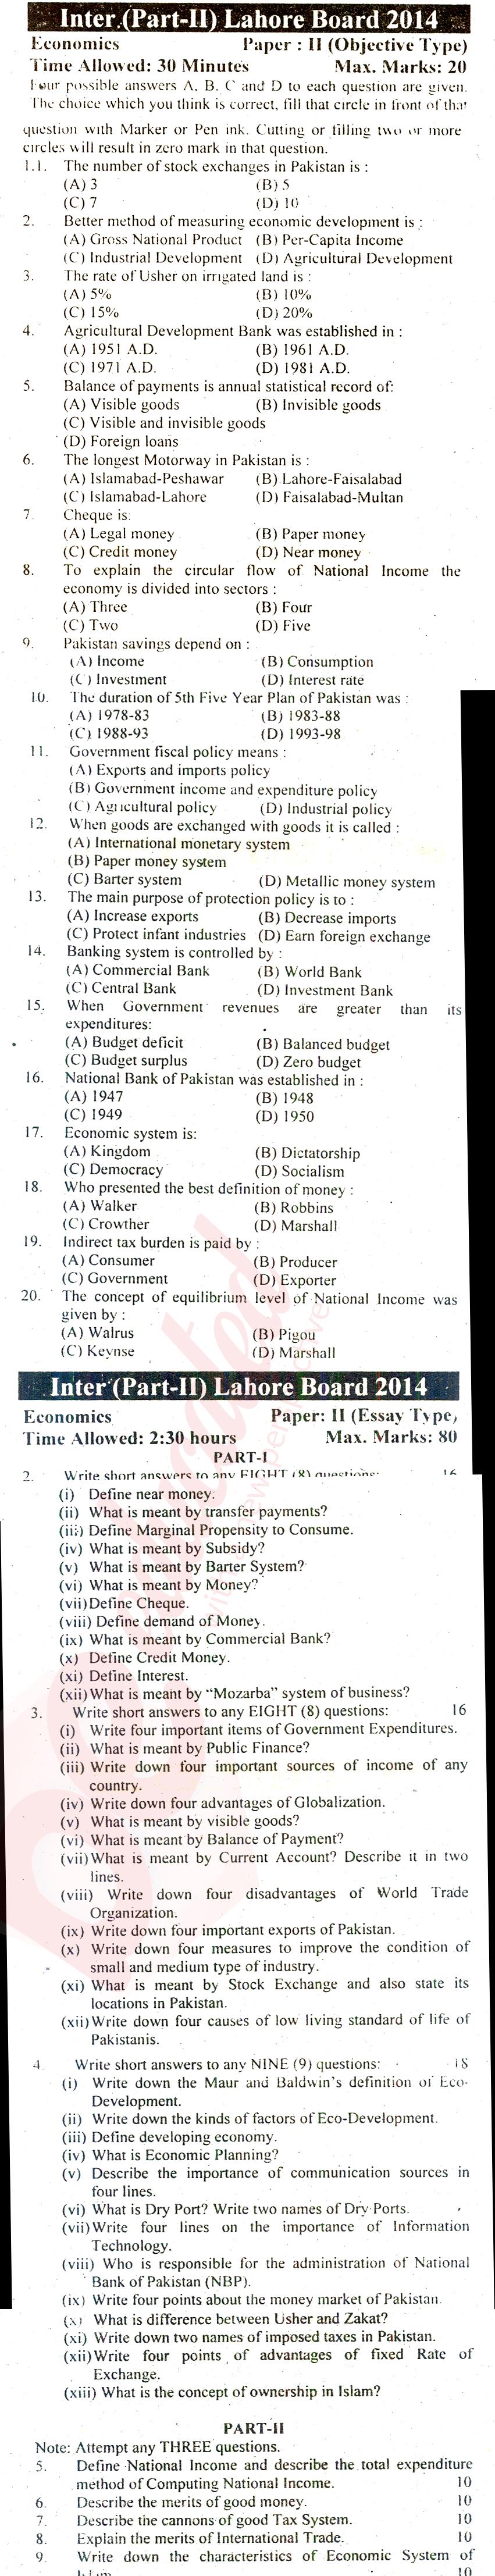 Economics FA Part 2 Past Paper Group 2 BISE Lahore 2014